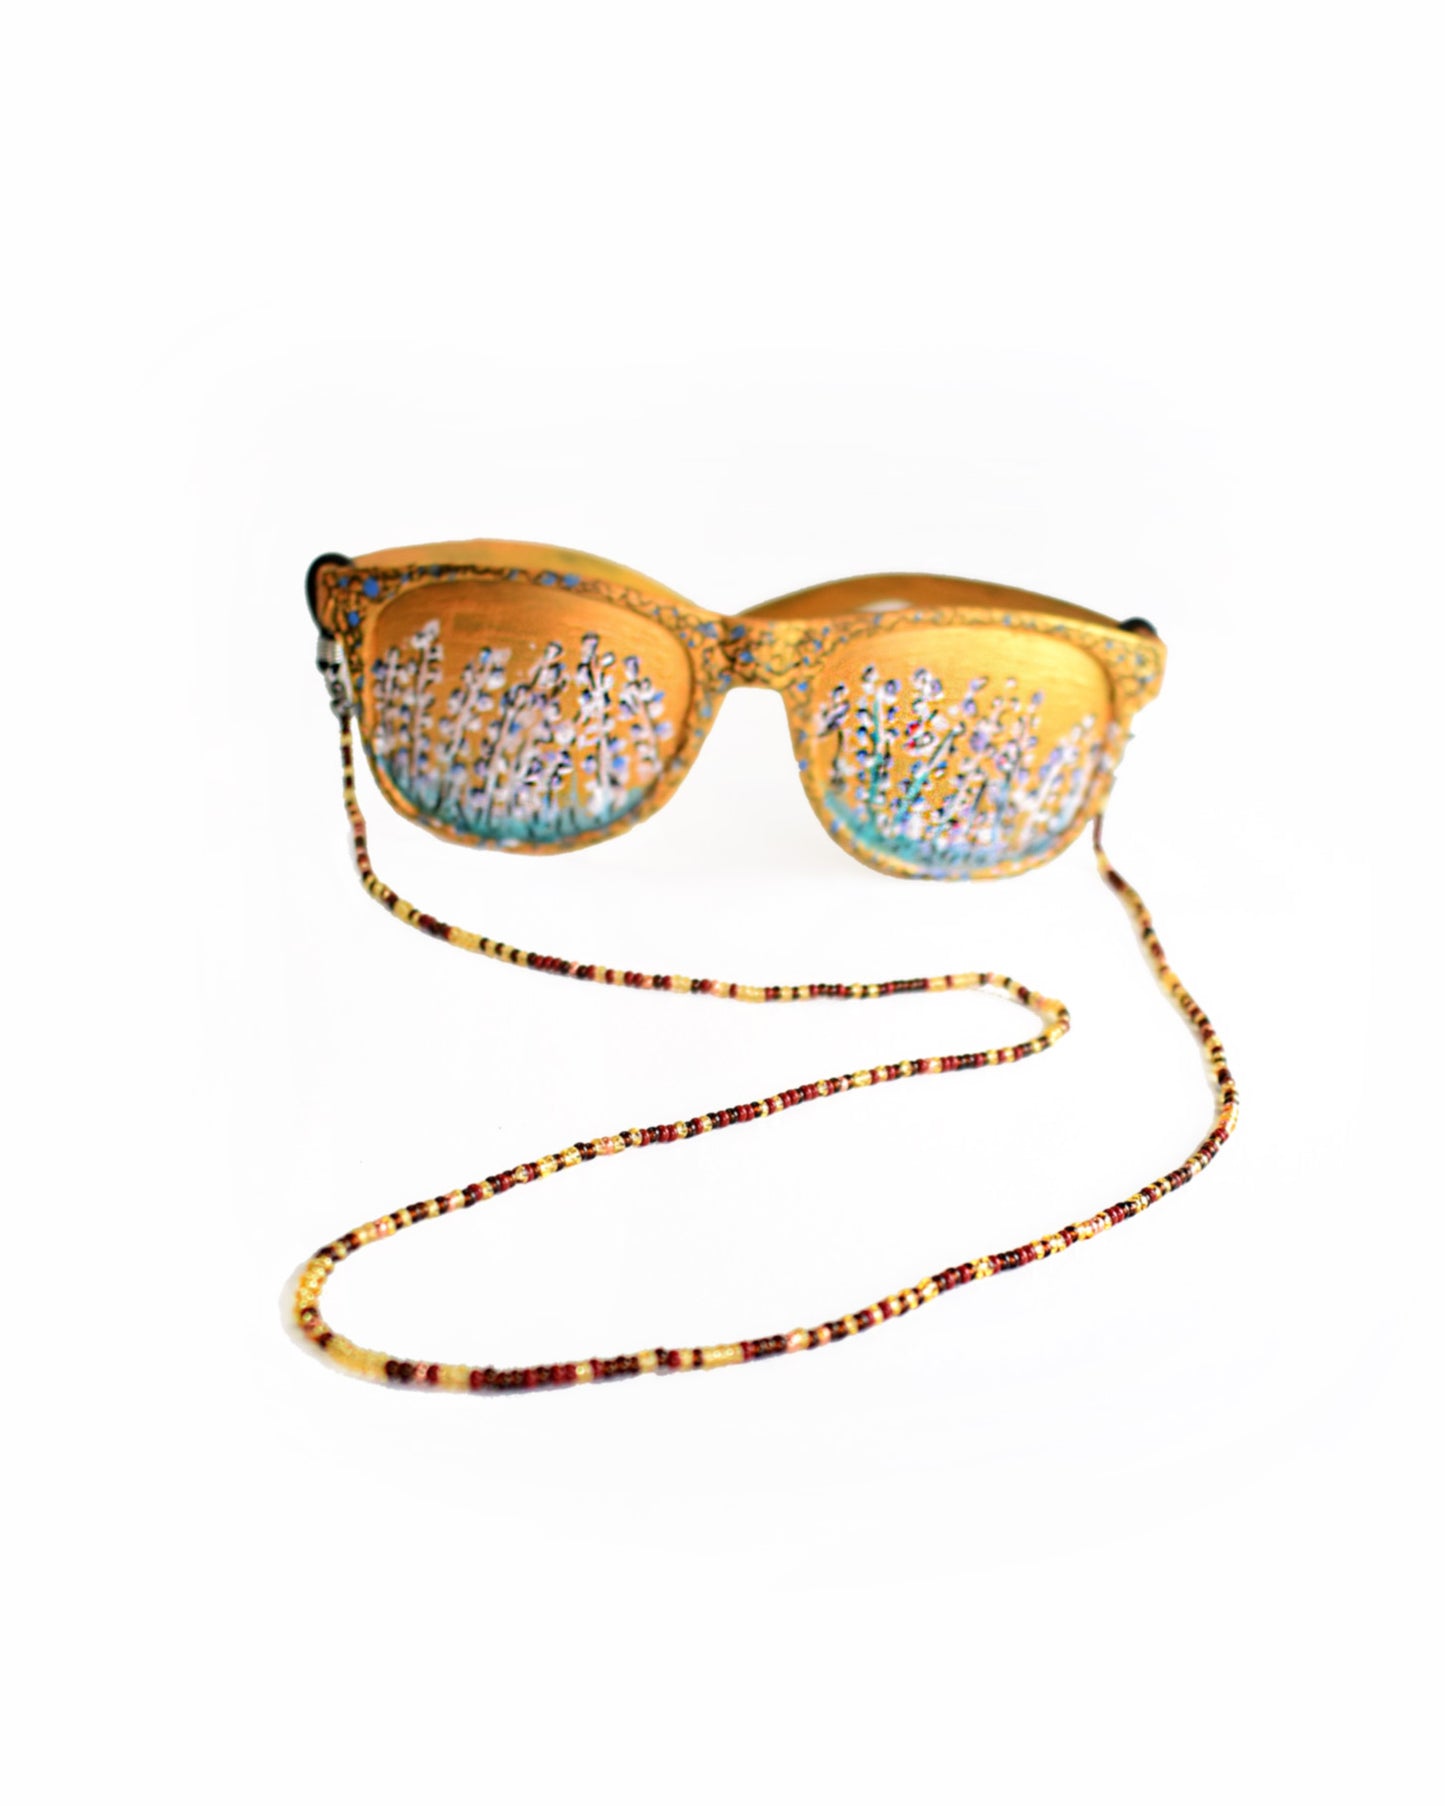 Acessórios de moda online - Loja de bijuterias Talai - Corrente de óculos de missangas multicoloridas, com destaque para o dourado transparente. Uma combinação de cores muito bonita para usar no verão. Veja mais na nossa loja online e compre bijuteria a condizer.